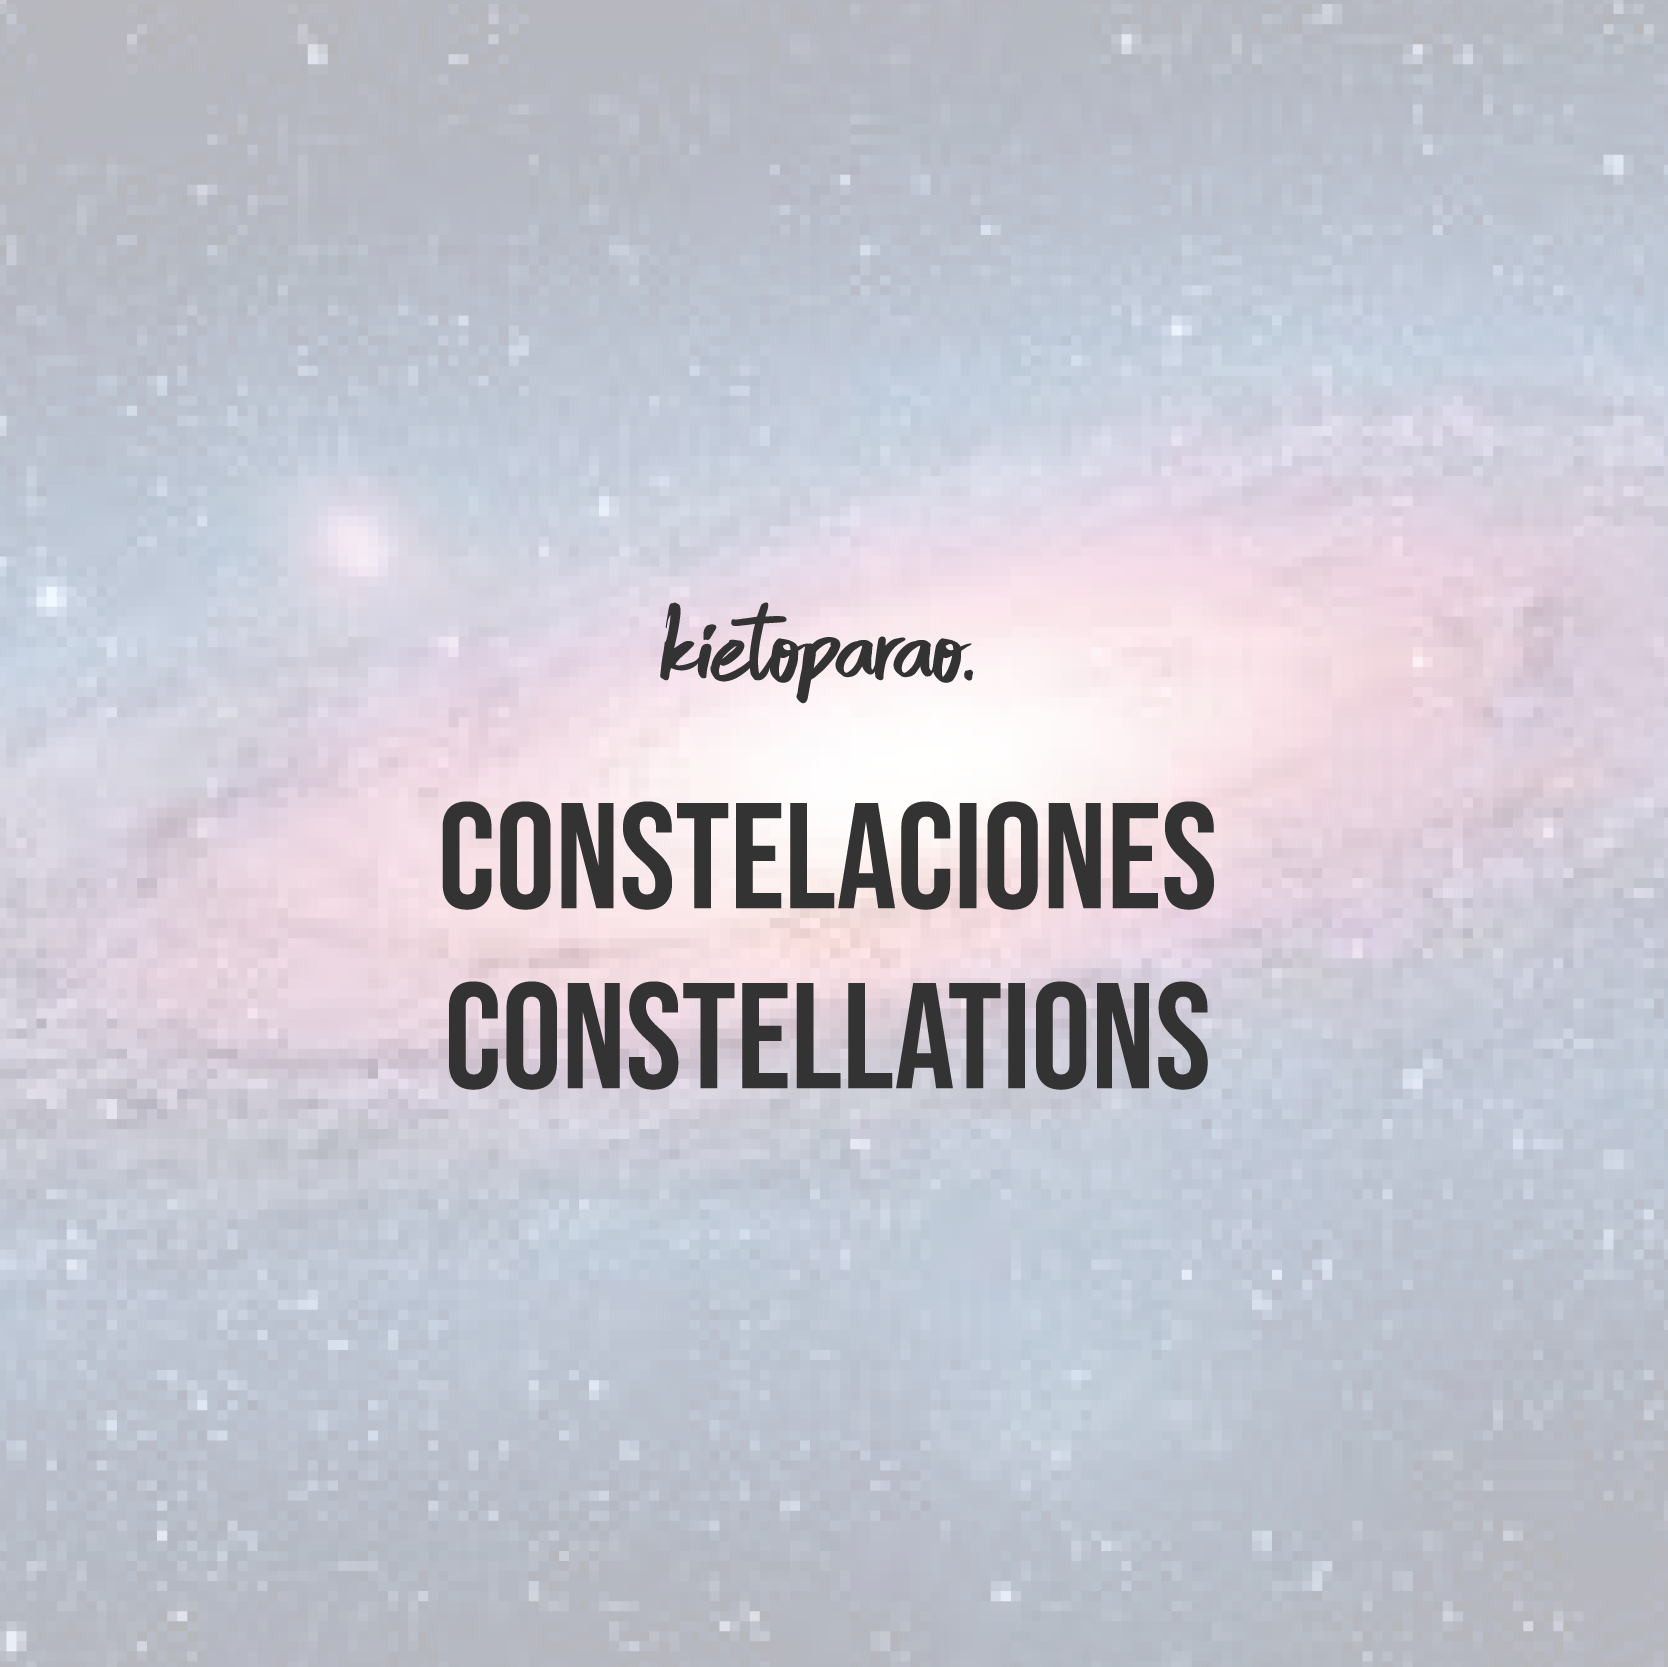 Constelaciones - Constellations - Kietoparao